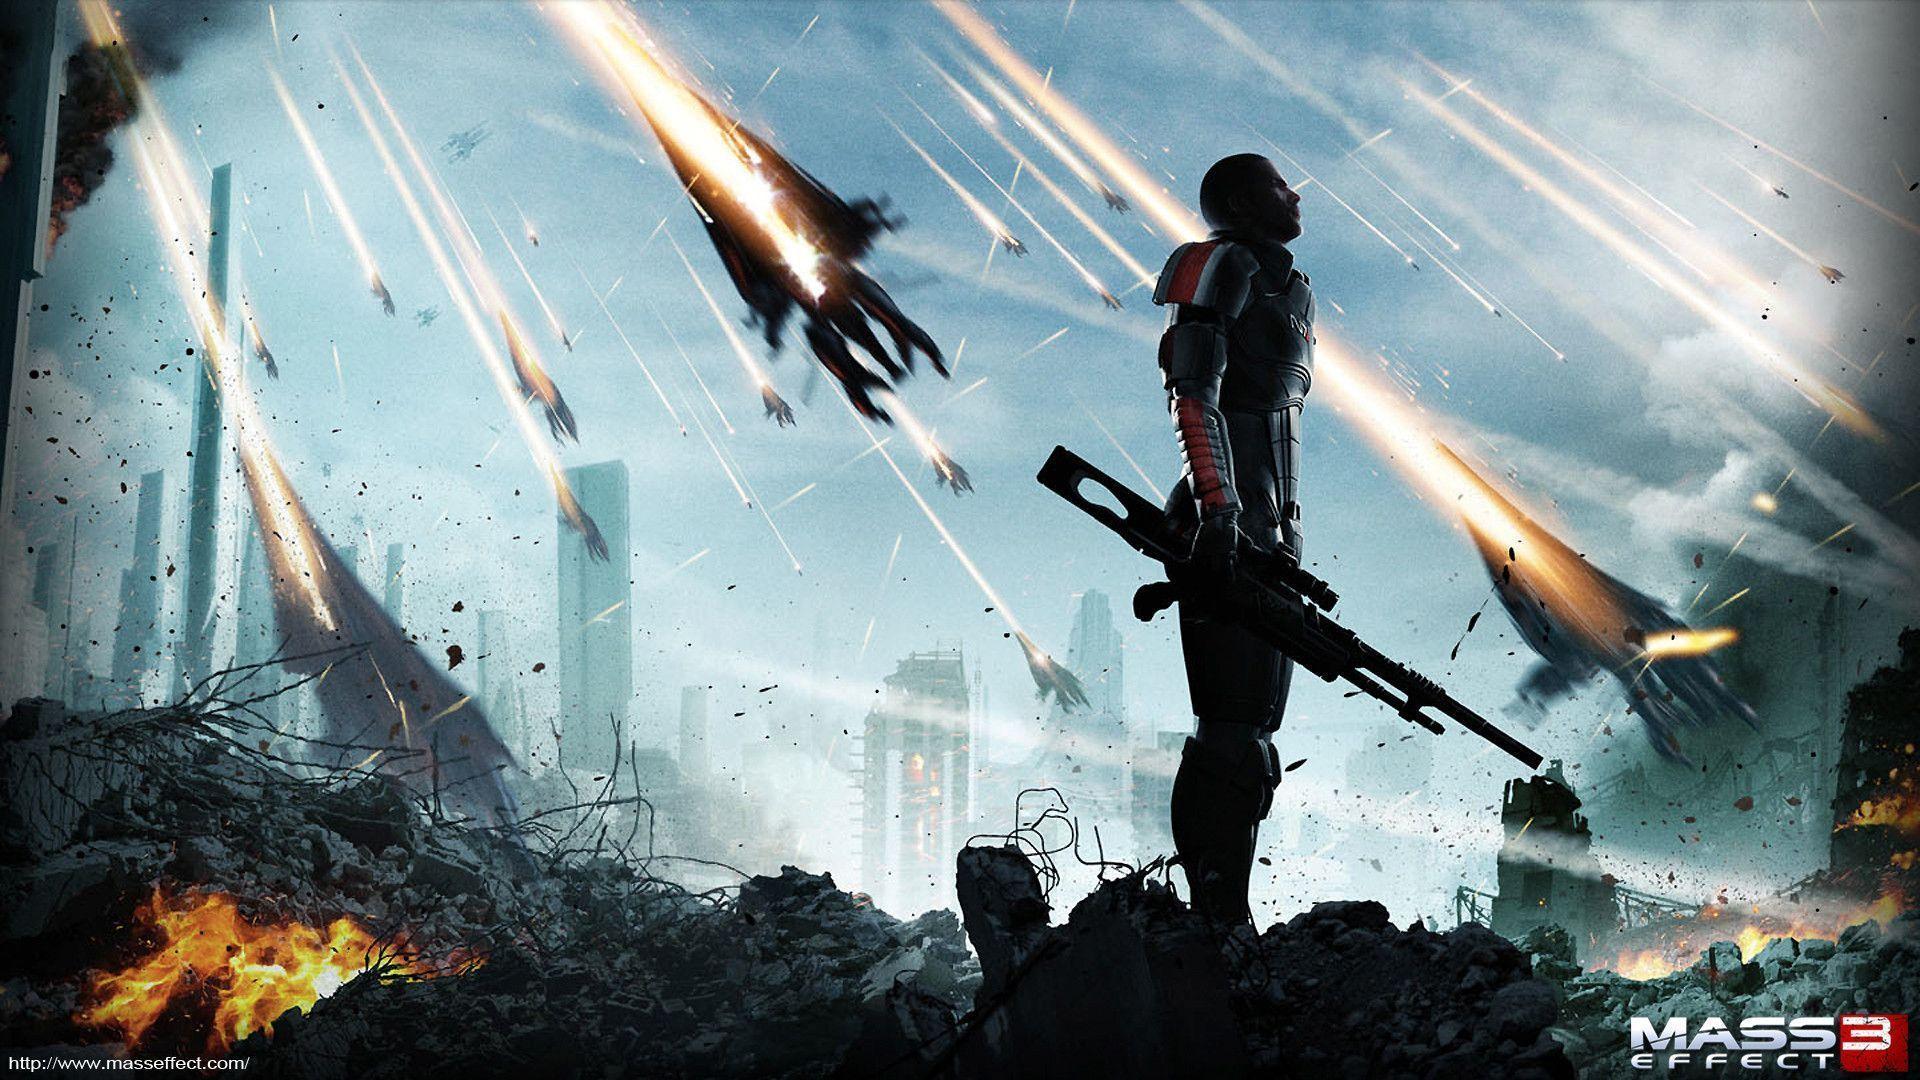 Download Mass Effect 3 Official Wallpaper High Resolution HD